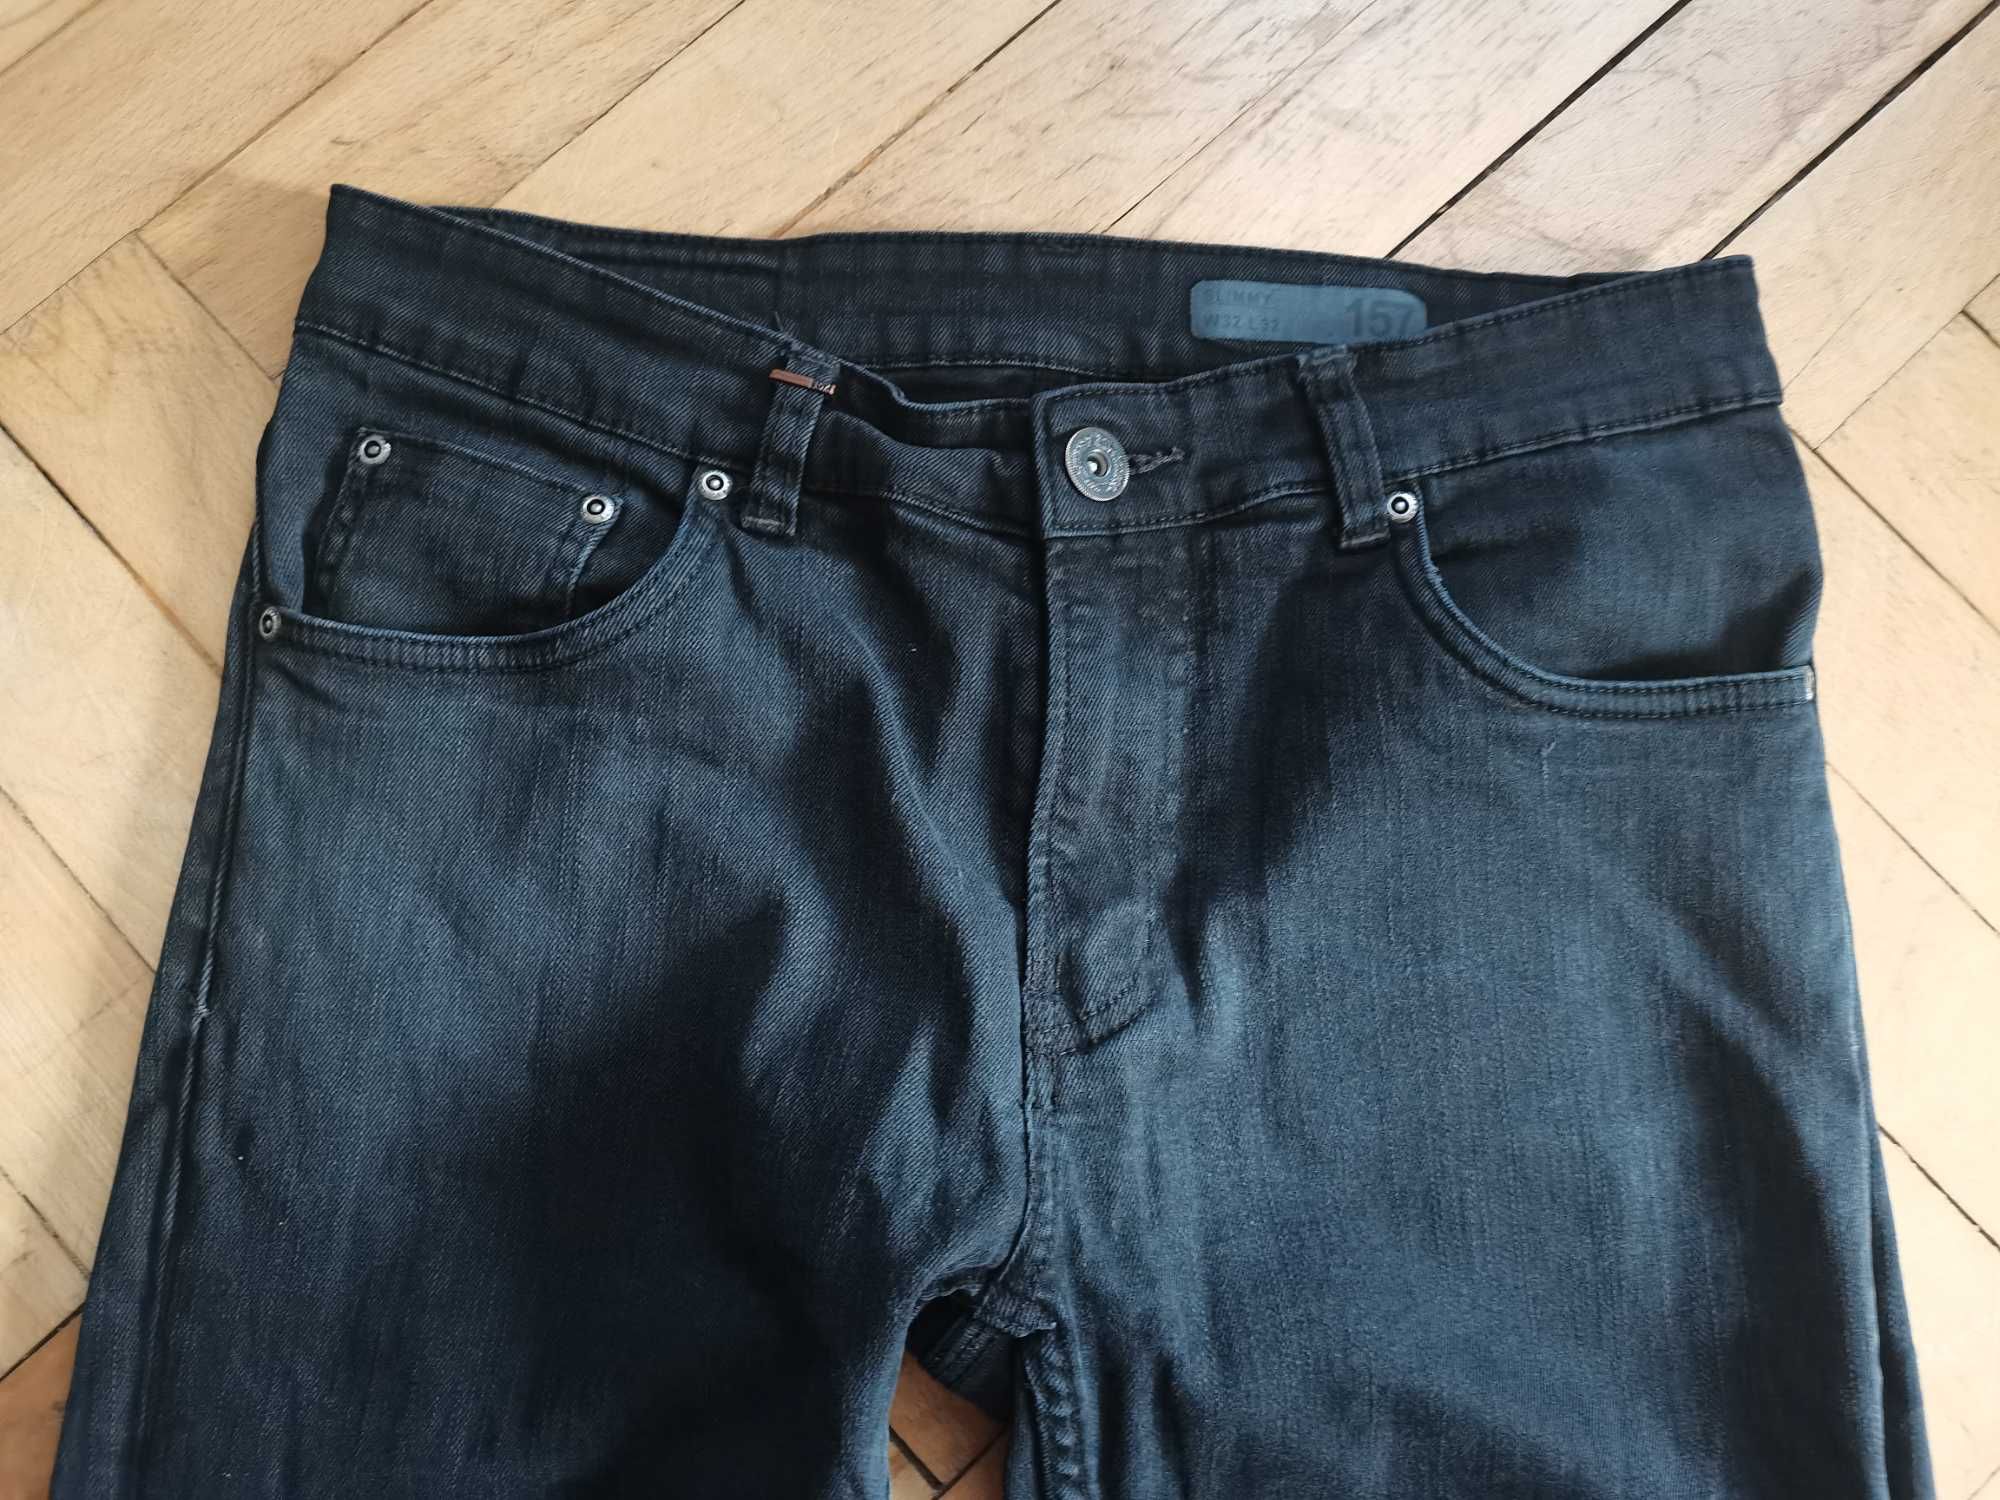 Spodnie jeansy slimmy czarne rozmiar 32 firma 157